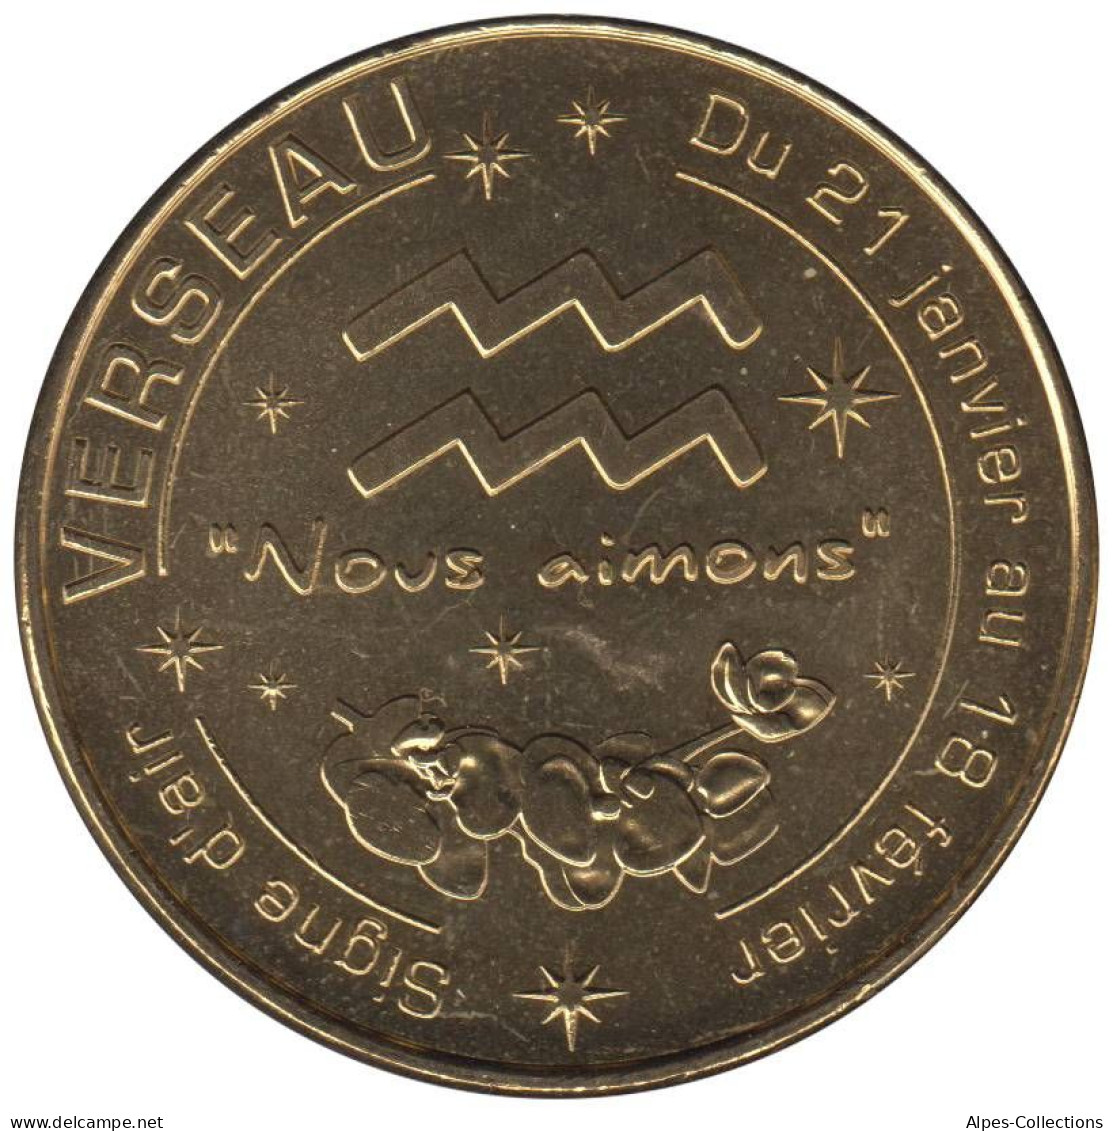 13-1716 - JETON TOURISTIQUE MDP - Verseau - Signe D'air - 2014.3 - 2014